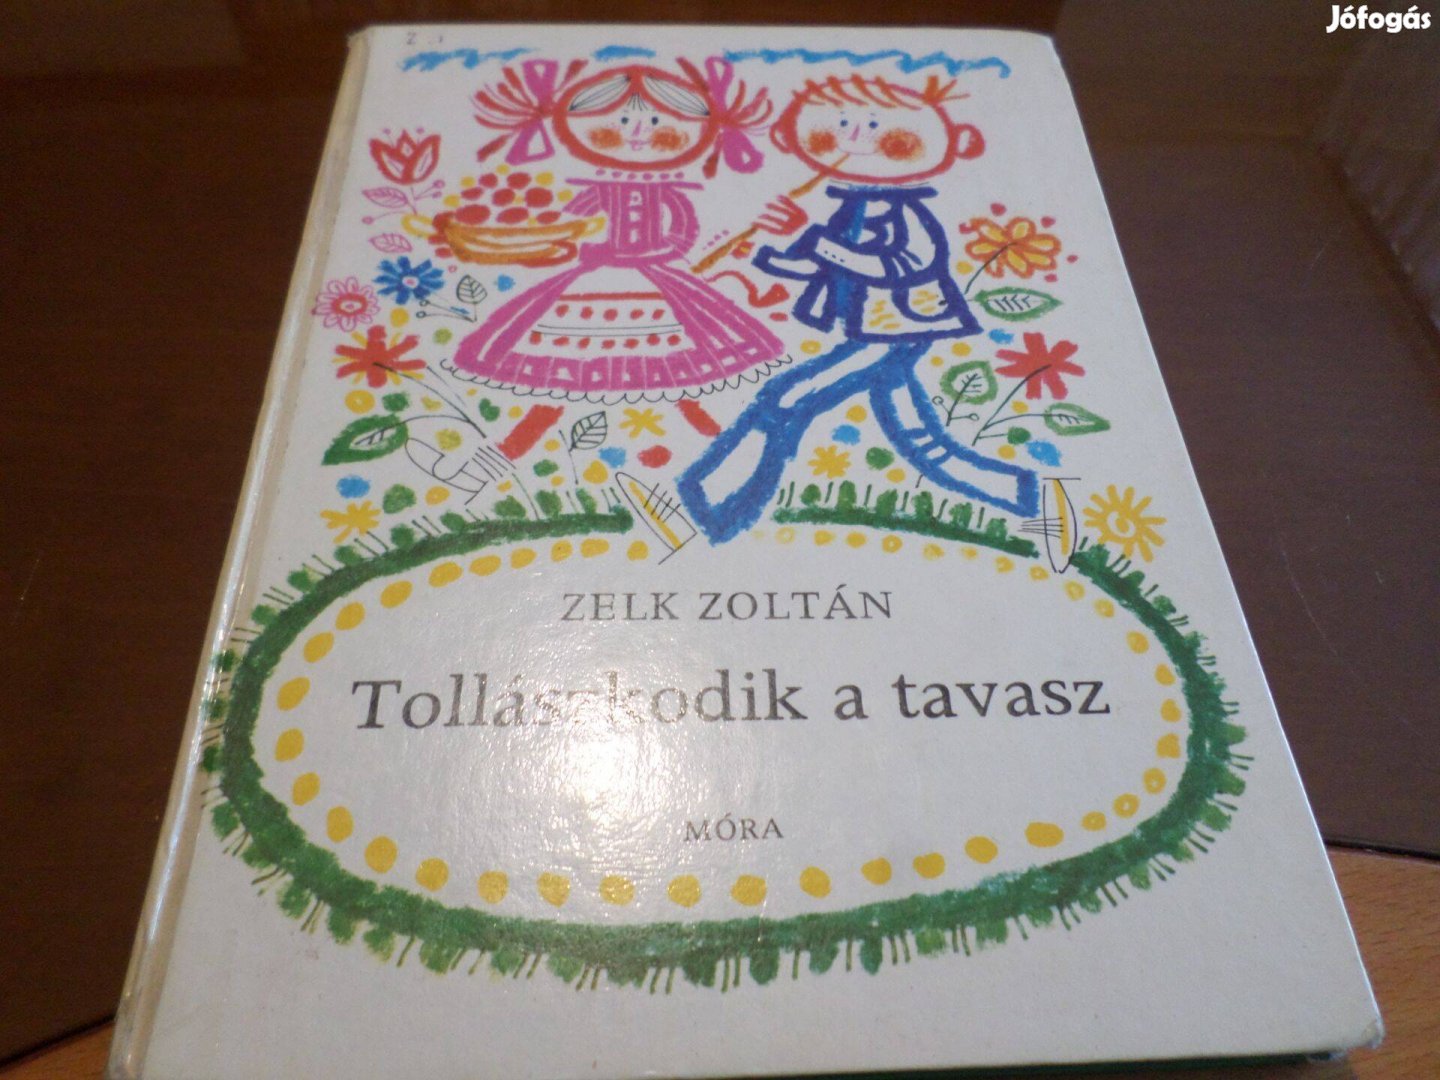 Zelk Zoltán Tollászkodik a tavasz, Kass jános rajz. 1976, Gyermekkönyv